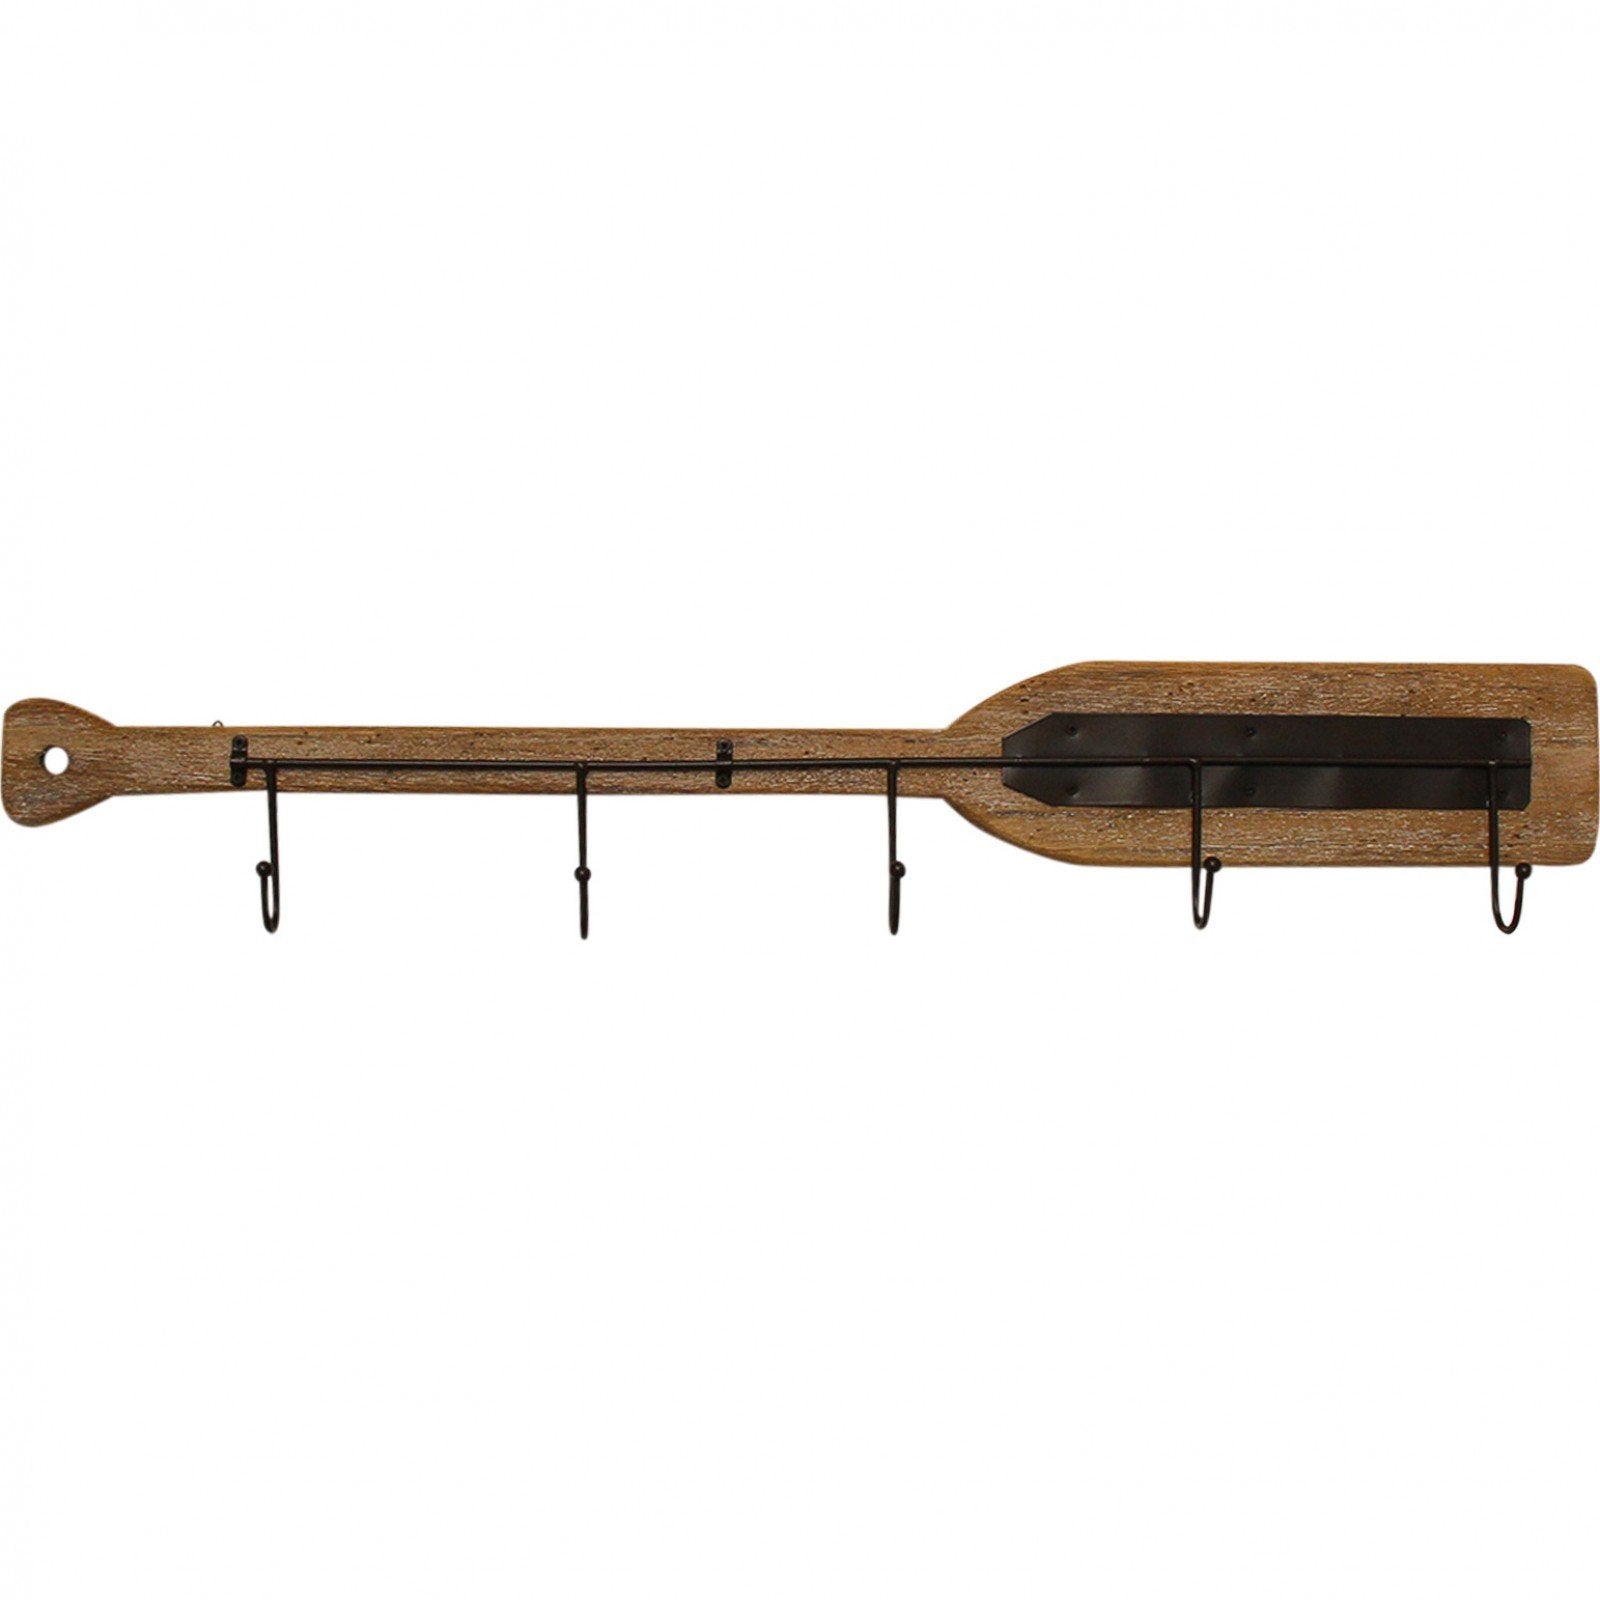 Wooden boat oar wall decor with 5 metal hooks – Six Things Shop Australia